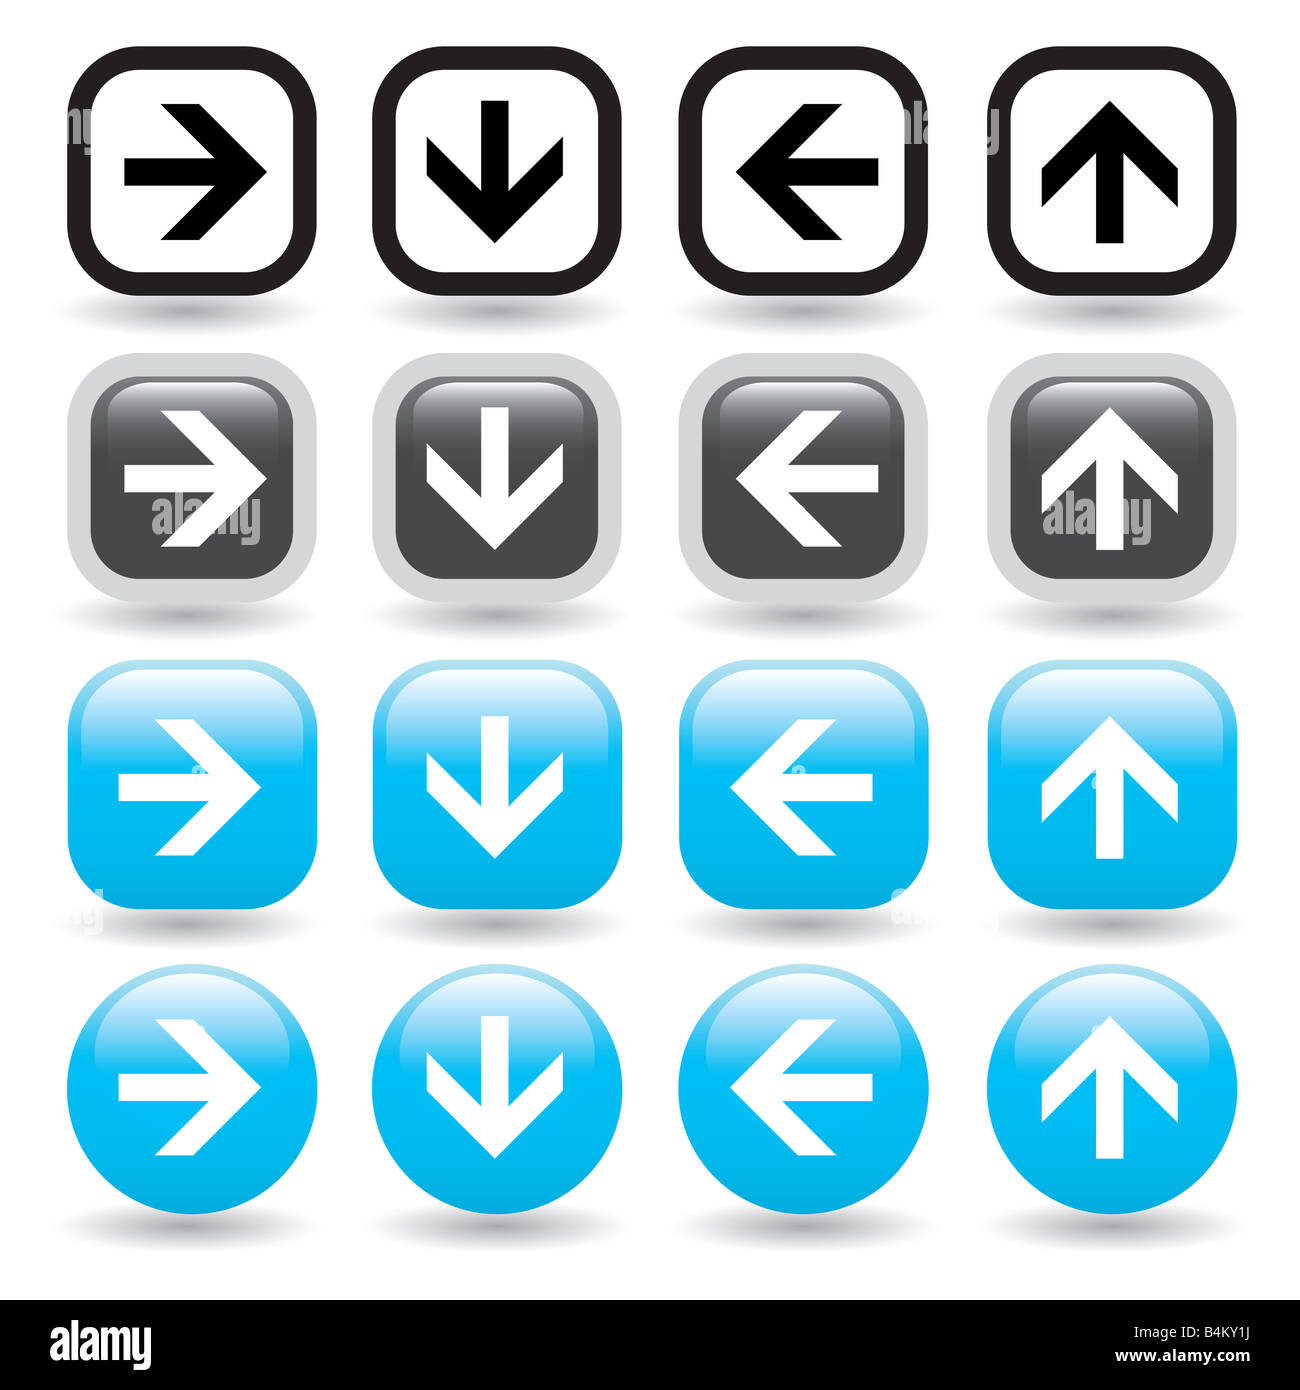 Un conjunto de iconos vectoriales de flecha direccional en negro y azul gran conjunto de iconos para la navegación de sitios web. En contacto conmigo para el formato vectorial. Foto de stock